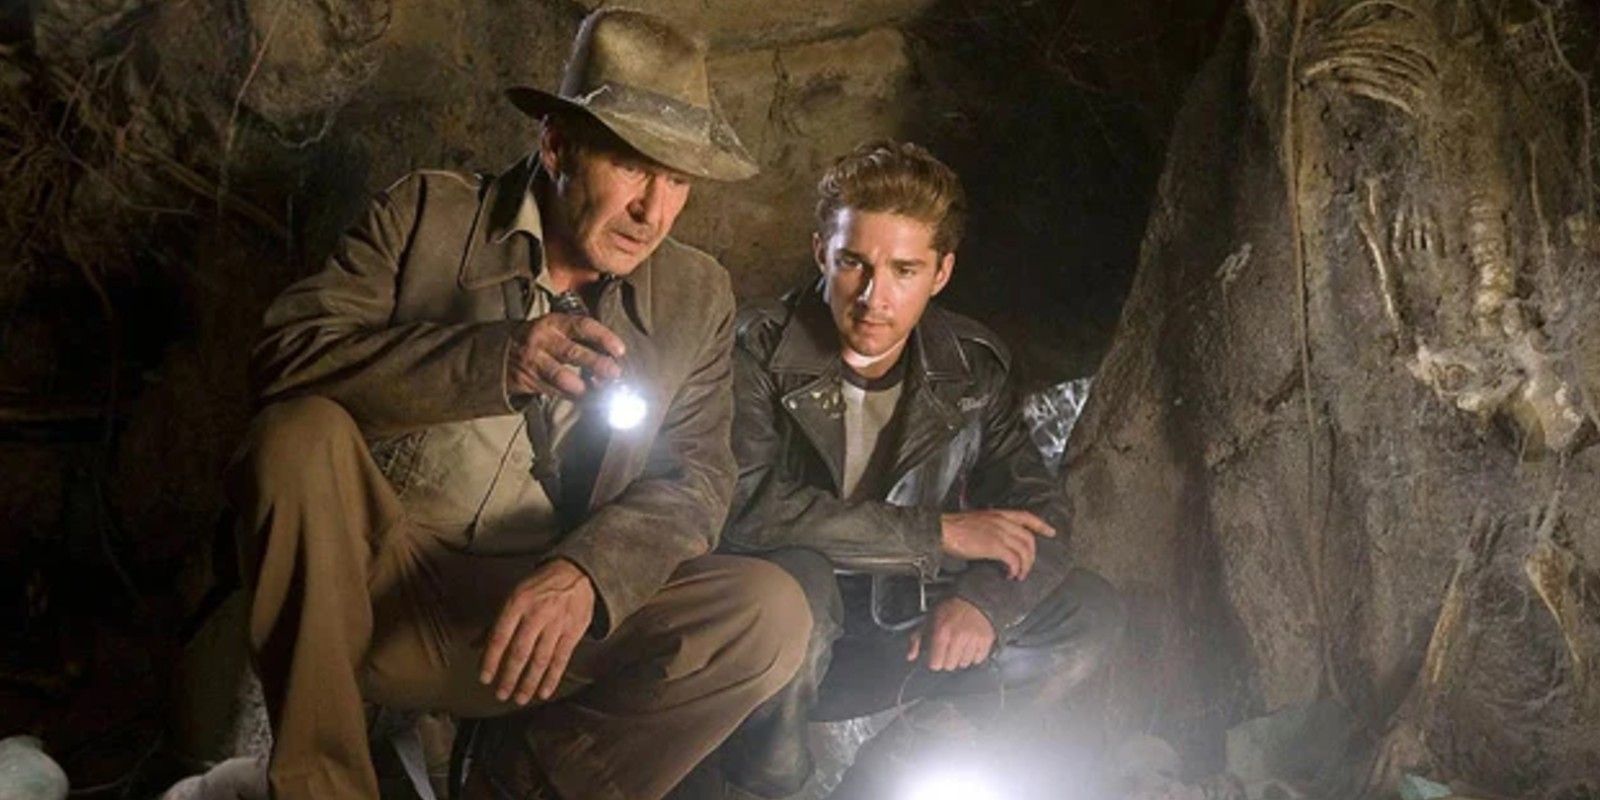 Indiana Jones and Mutt